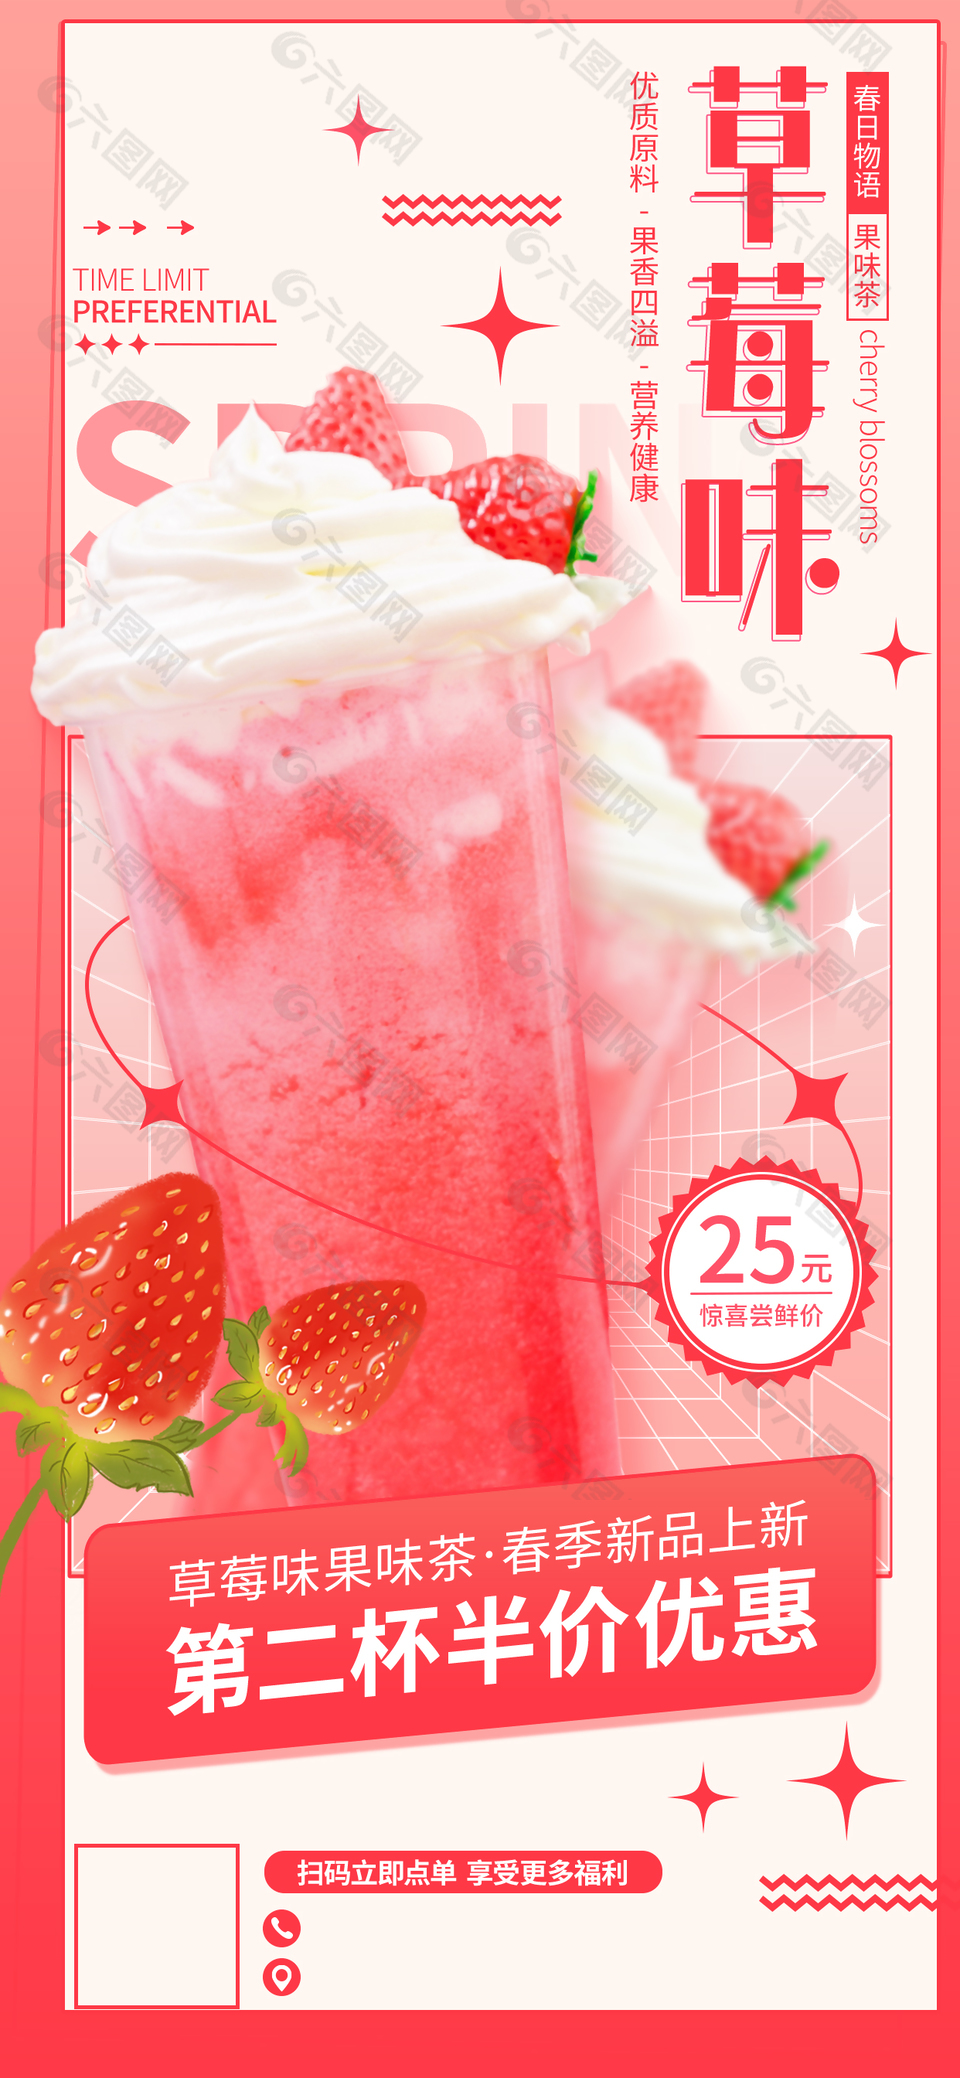 草莓果味茶新品上市宣传海报素材下载